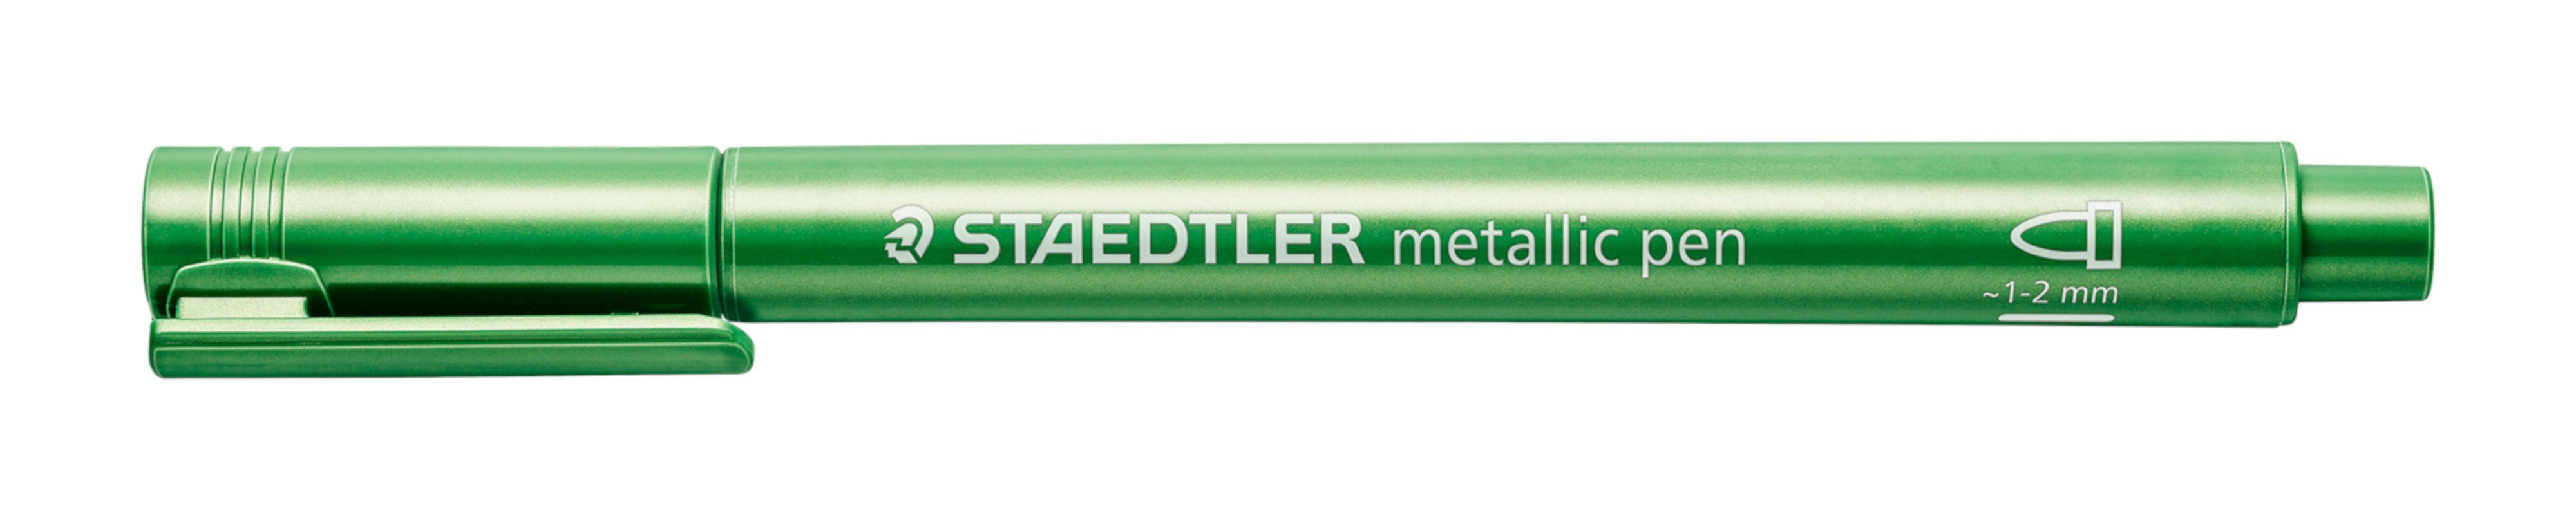 STAEDTLER Marker 8323-553 metallic pen grün 1-2 mm Lackmarker Layoutmarker, pigmentierte Tinte